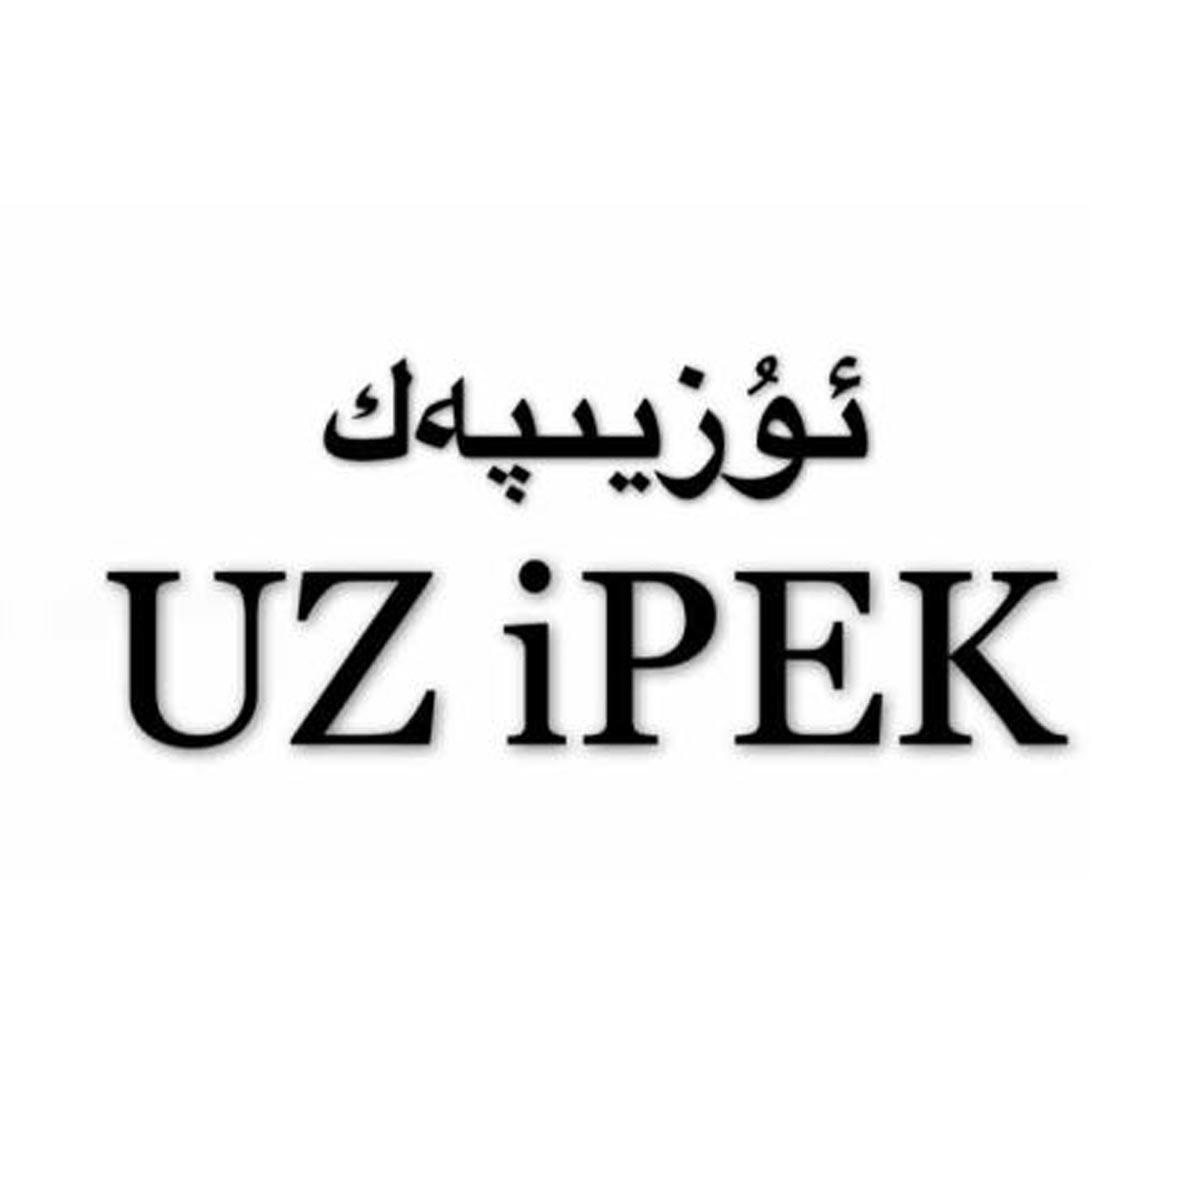 25类-服装鞋帽UZ IPEK商标转让